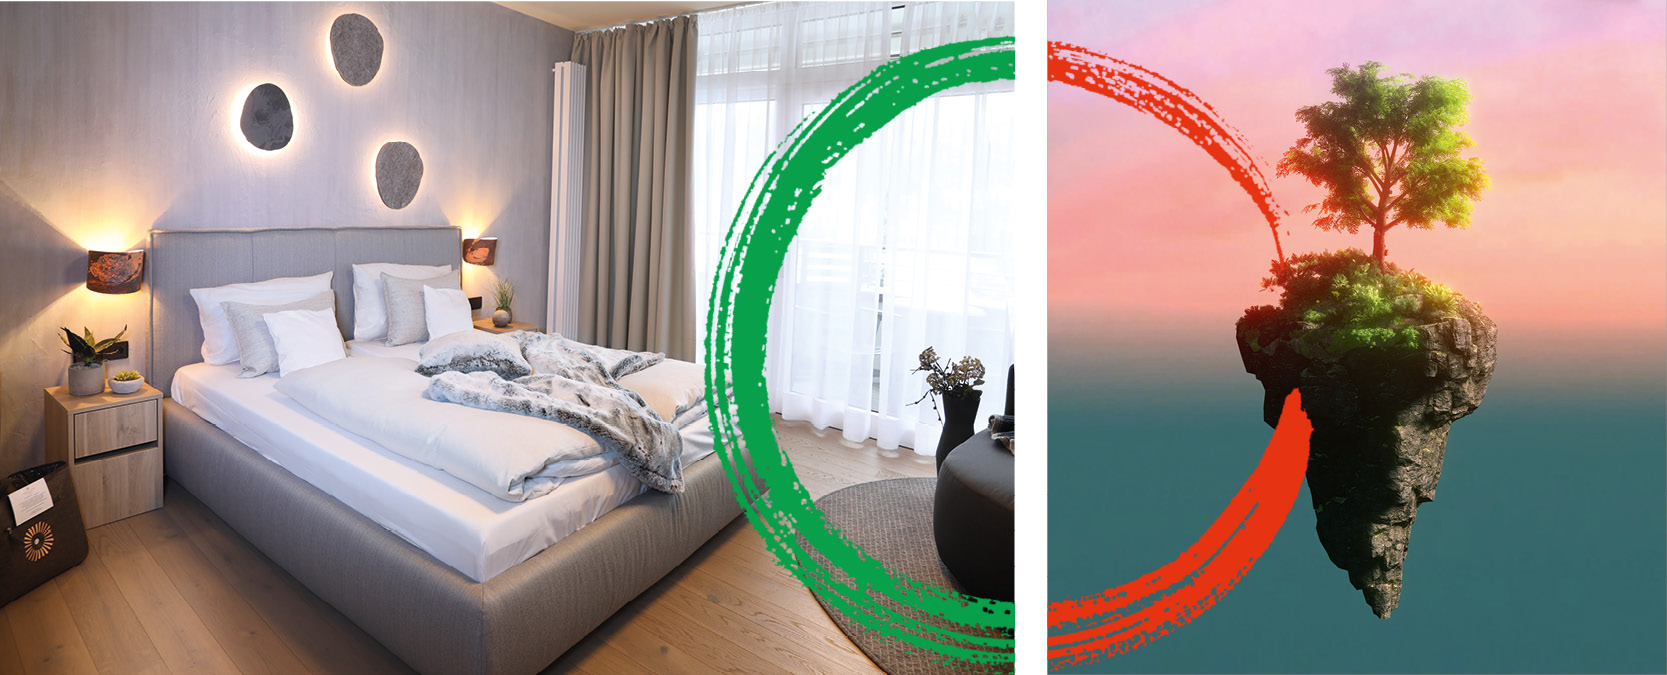 Titelbild für das nachhaltige Zimmerdesign „Falkenstein“, eins der drei zukunftsorientierten, Cradle to Cradle® inspirierten Hotelzimmerkonzepte des Hotel Schwarzwald Panorama.